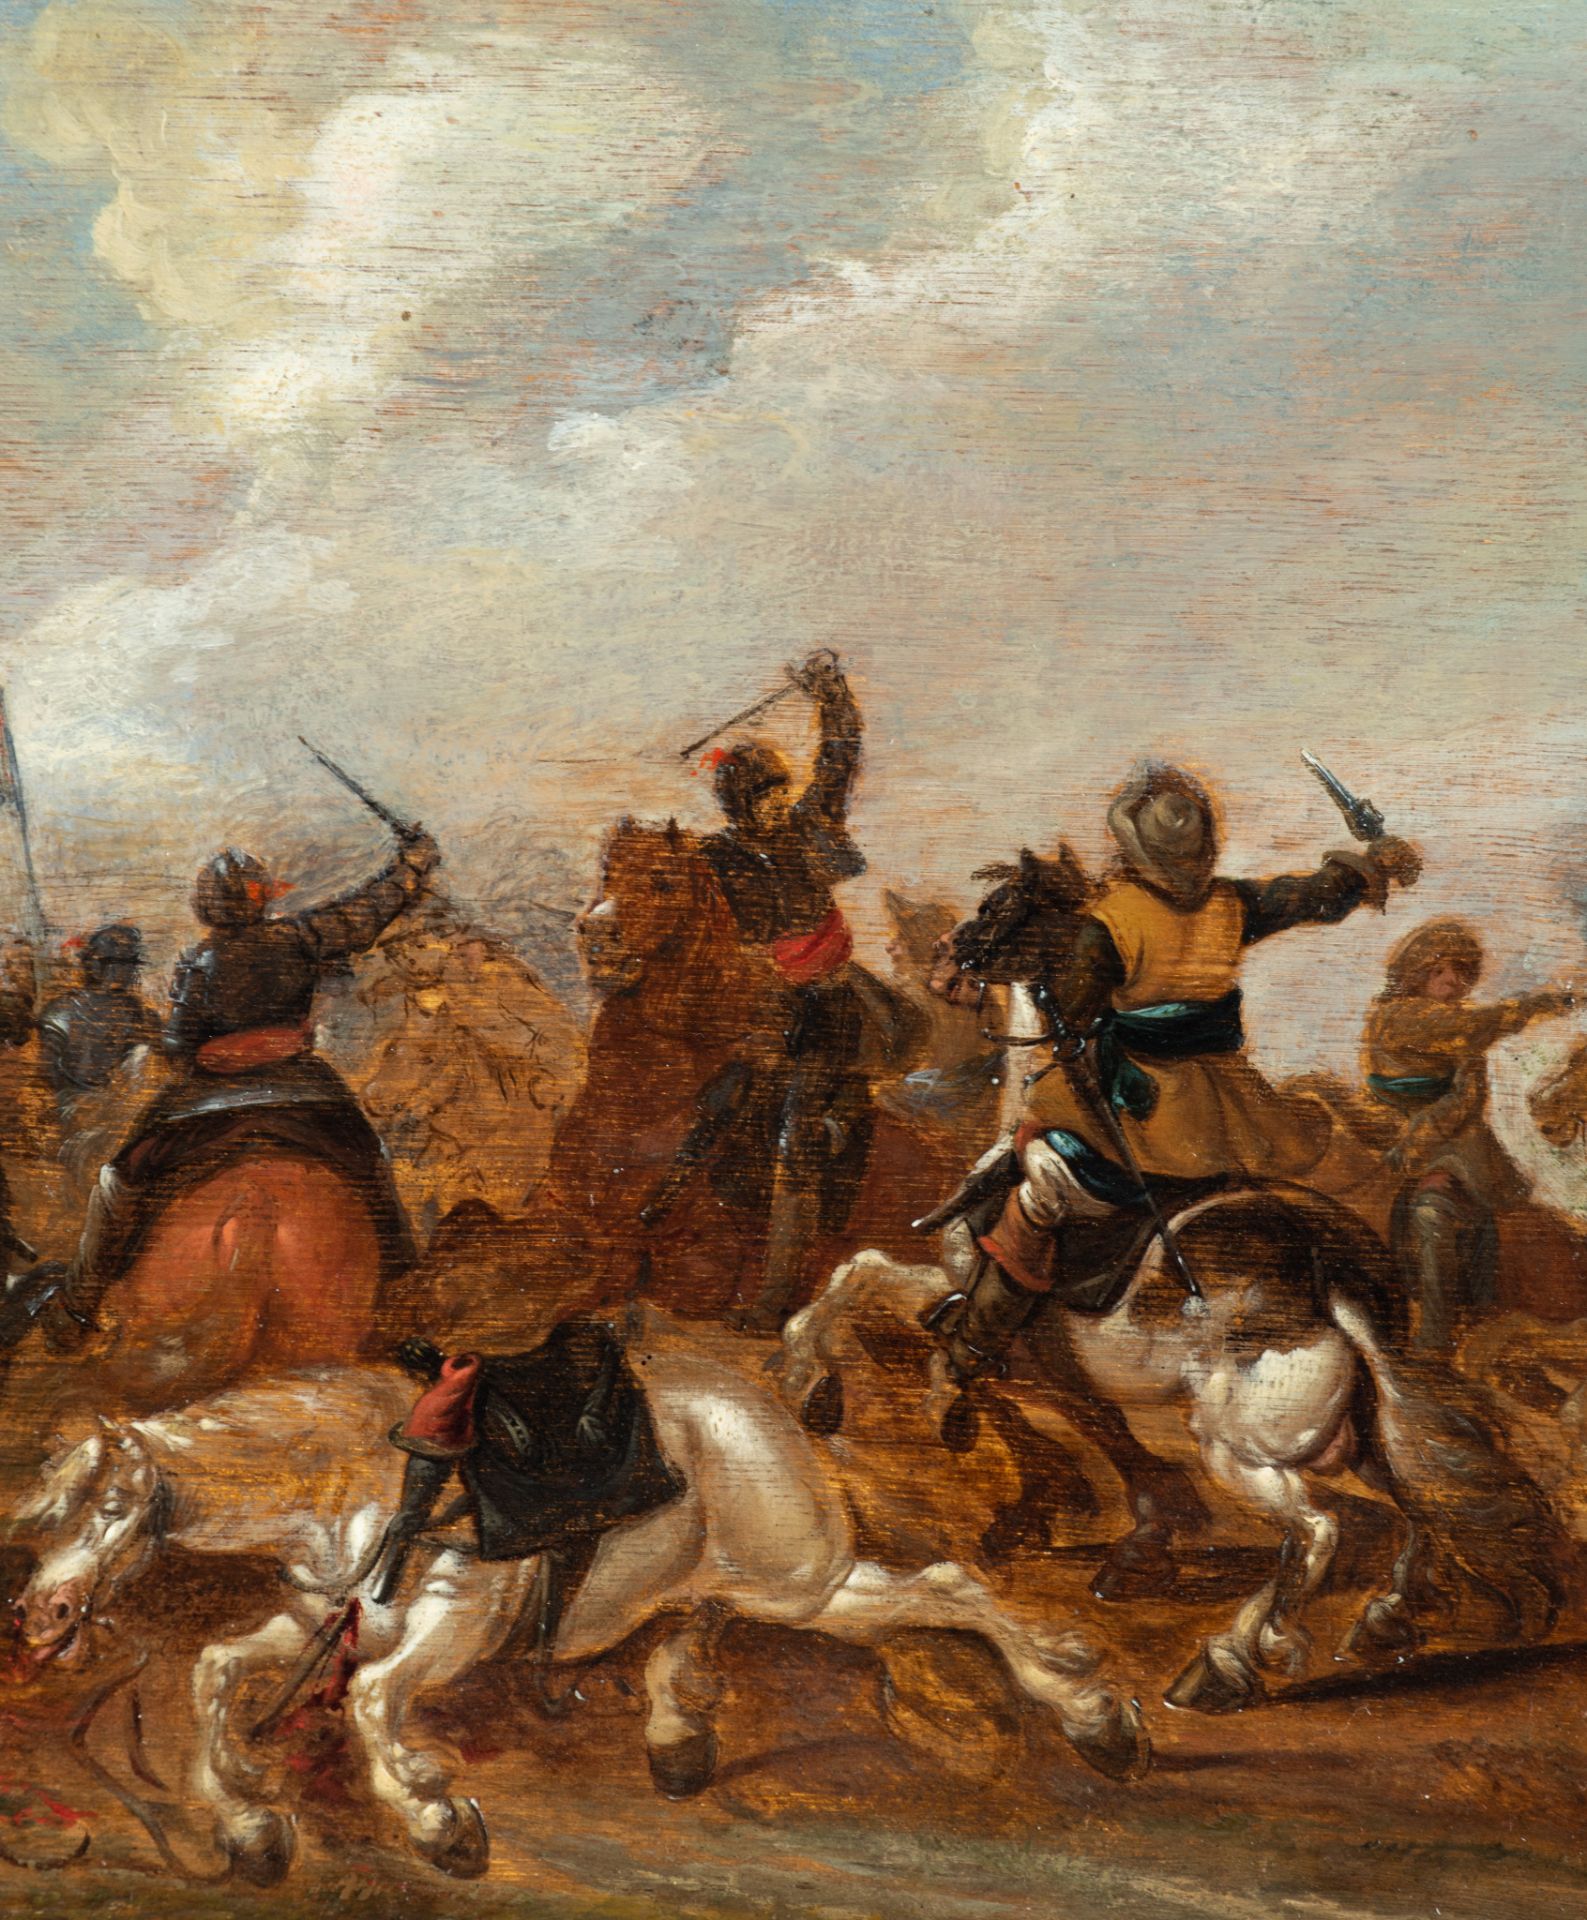 Esaias I van de Velde (1587-1630), a cavalry battle scene, oil on an oak panel, 30 x 42 cm